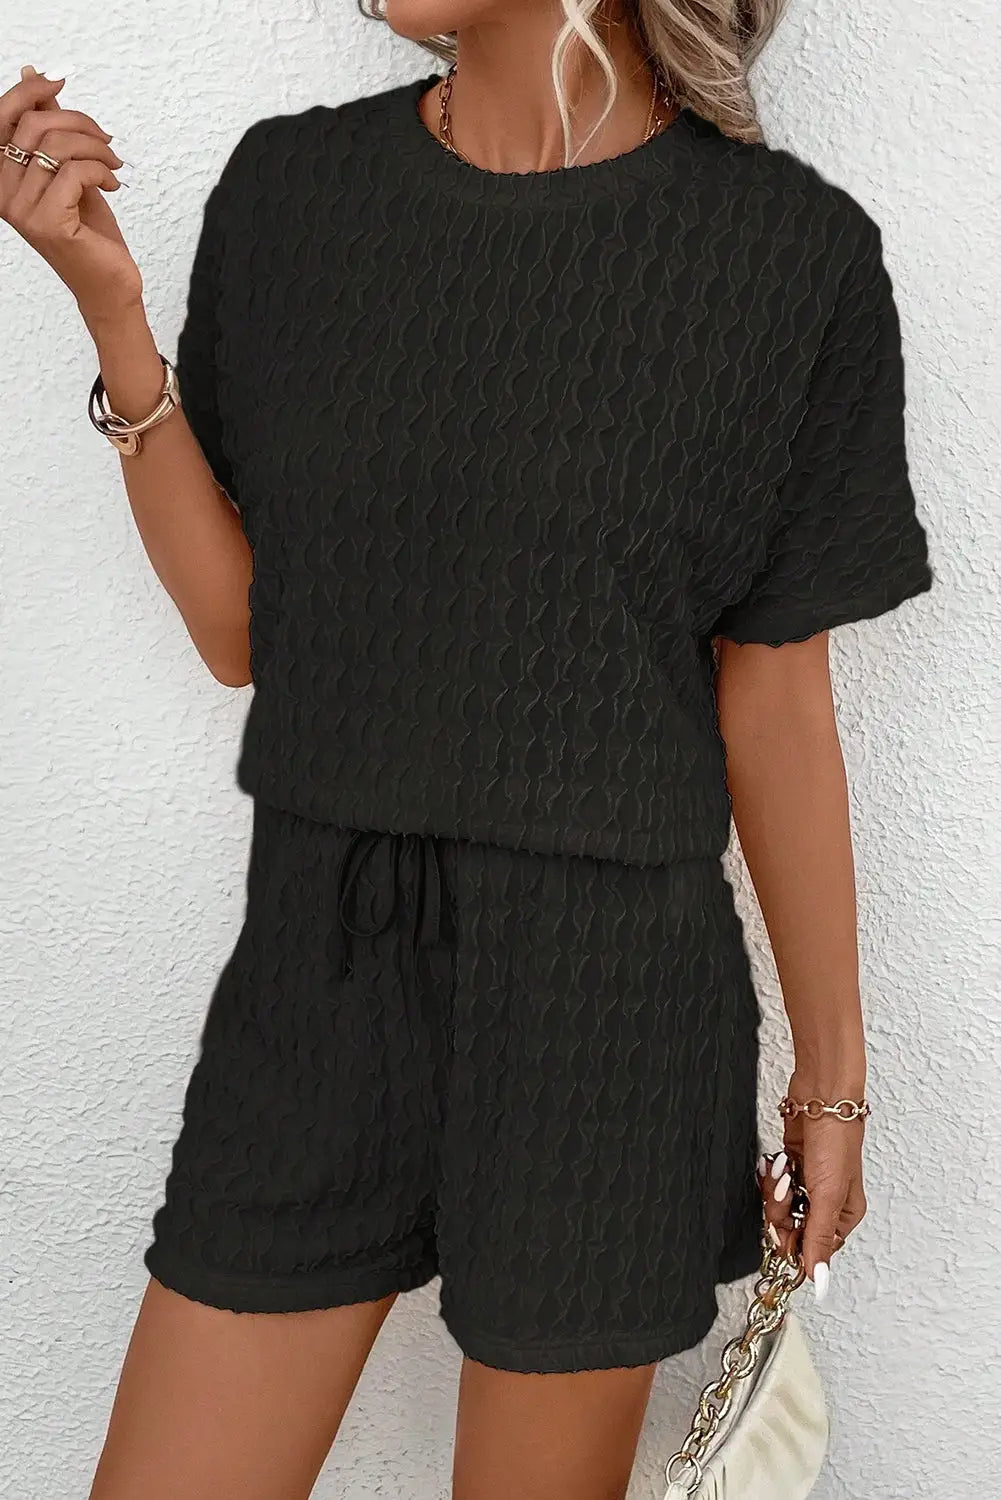 Black frill textured short sleeve top and drawstring shorts set - sets